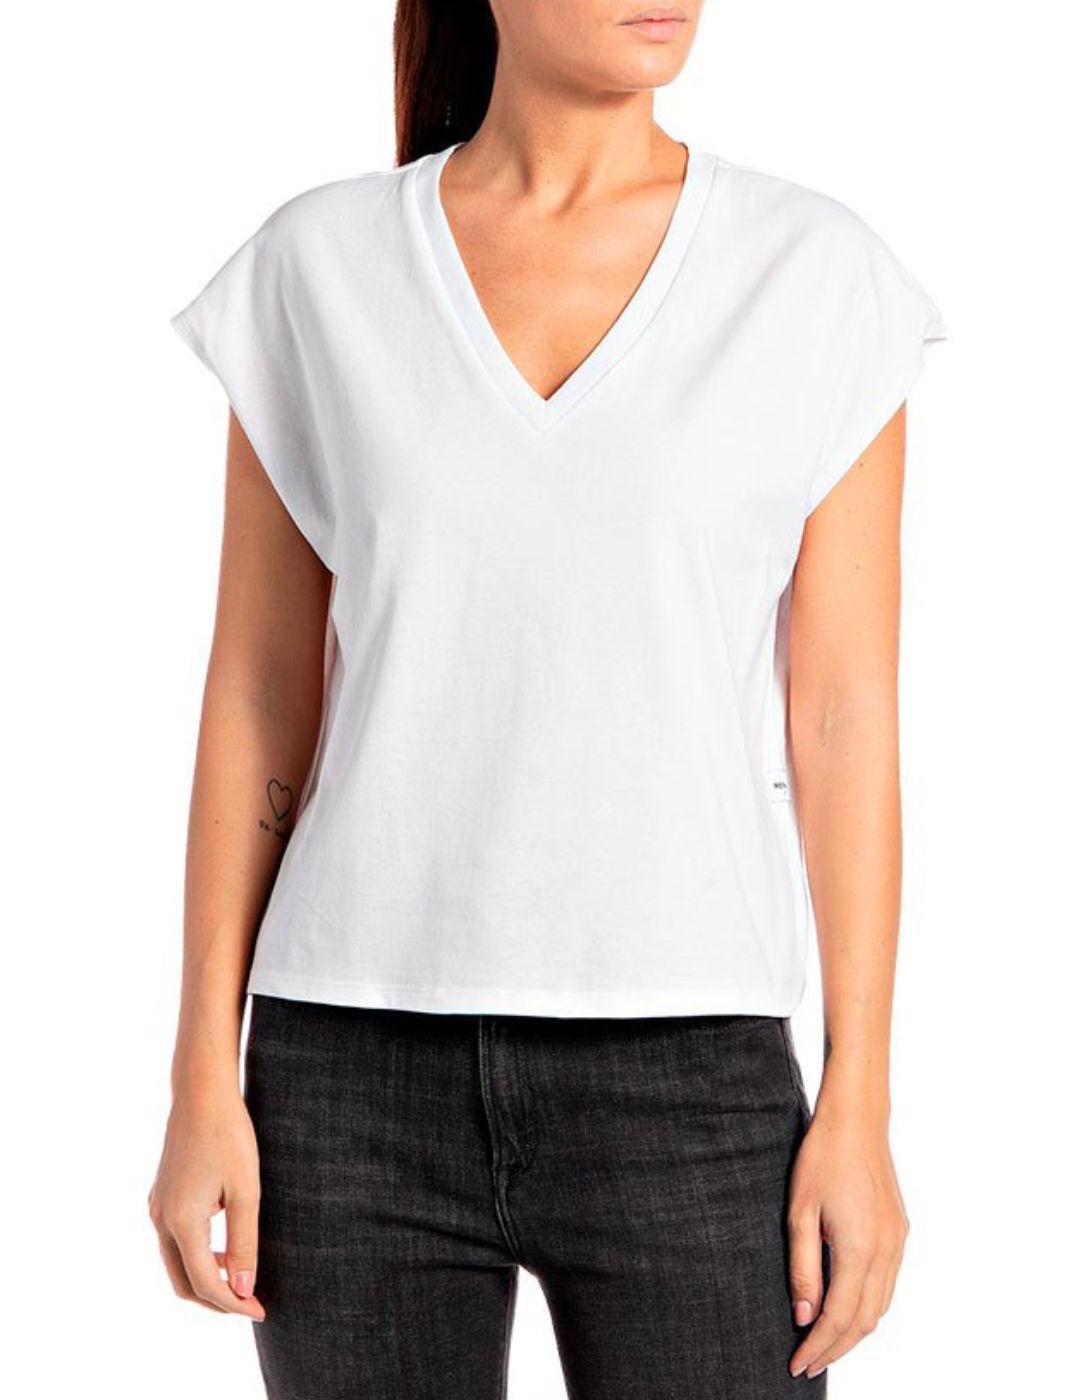 Camiseta Replay blanca  para mujer -b